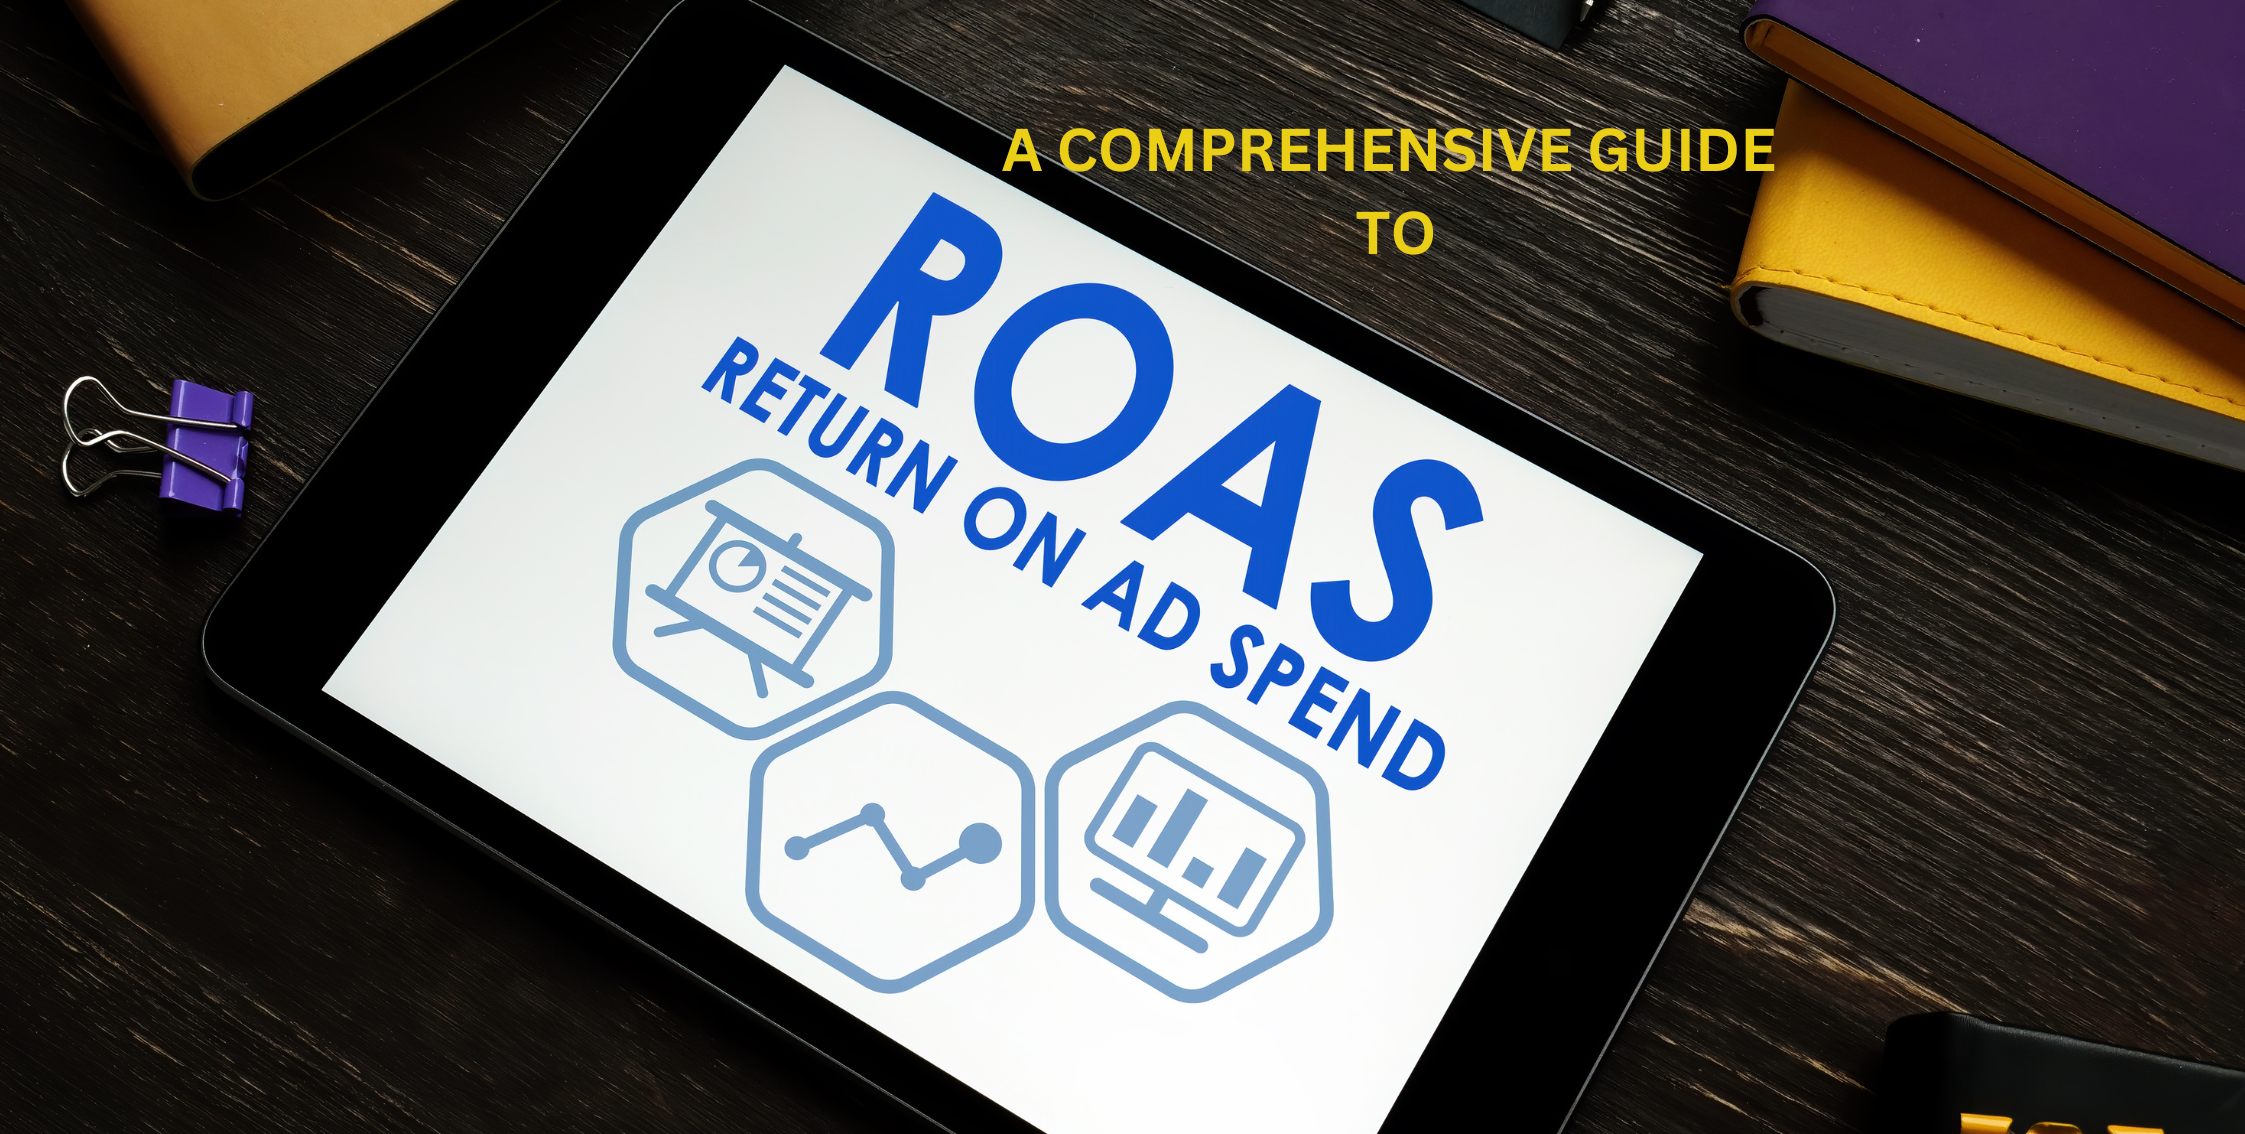 A Comprehensive Guide to ROAS